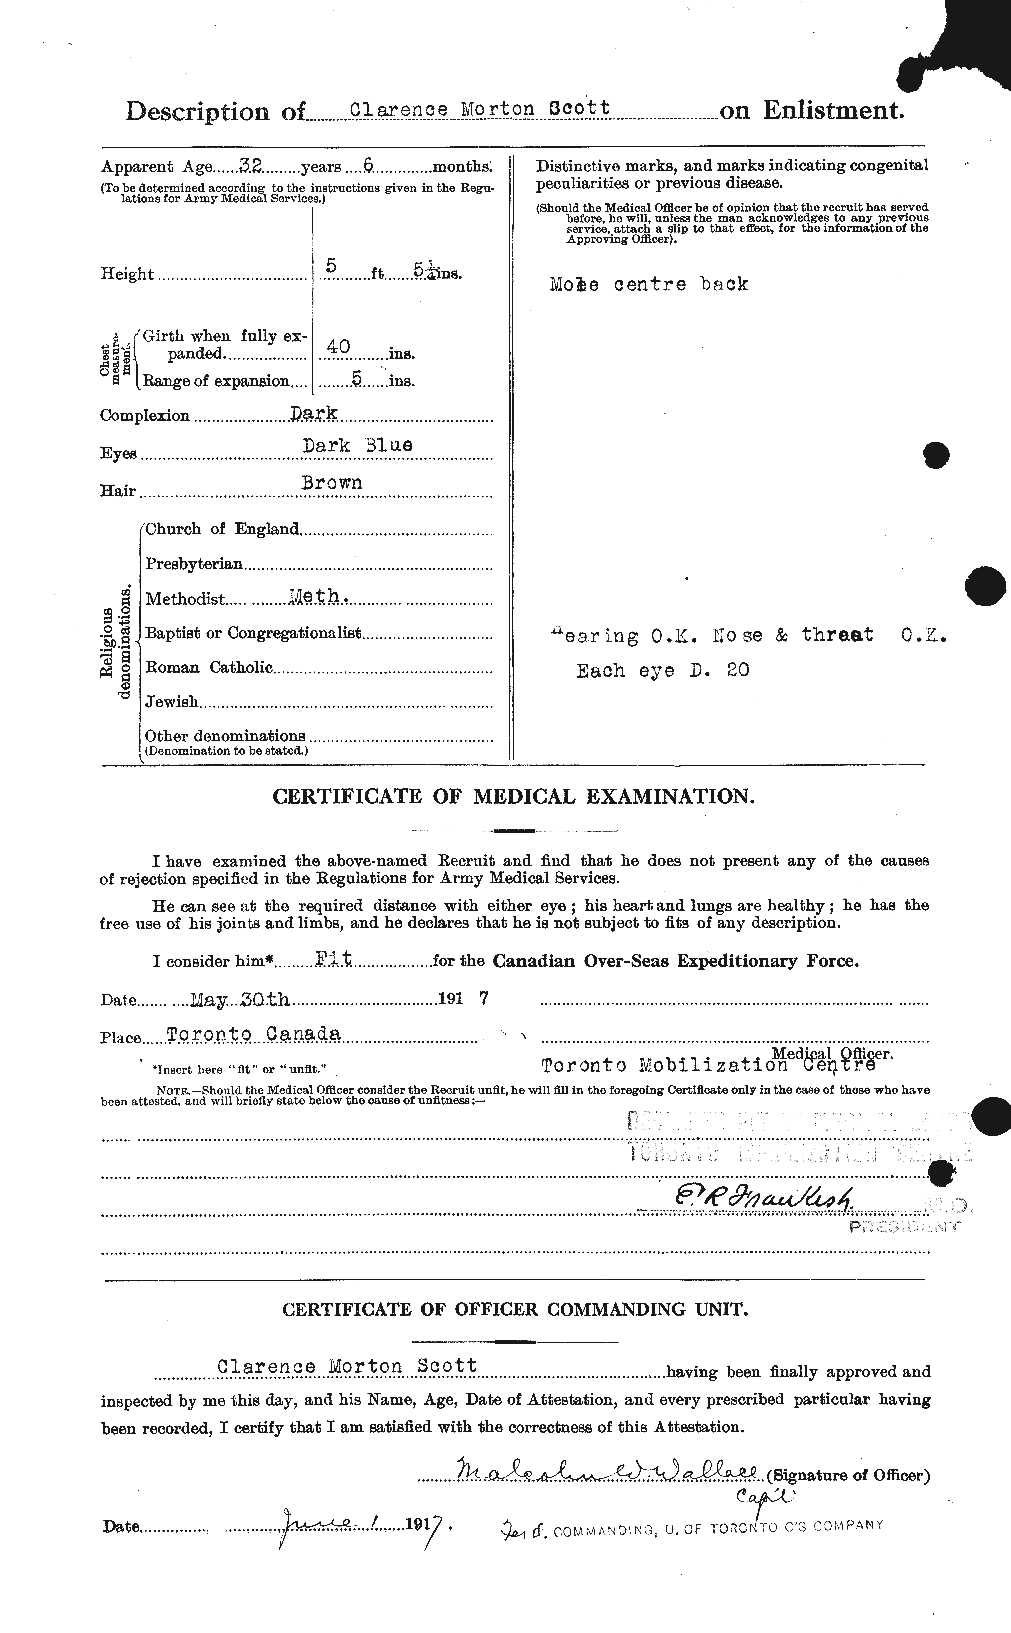 Dossiers du Personnel de la Première Guerre mondiale - CEC 085642b